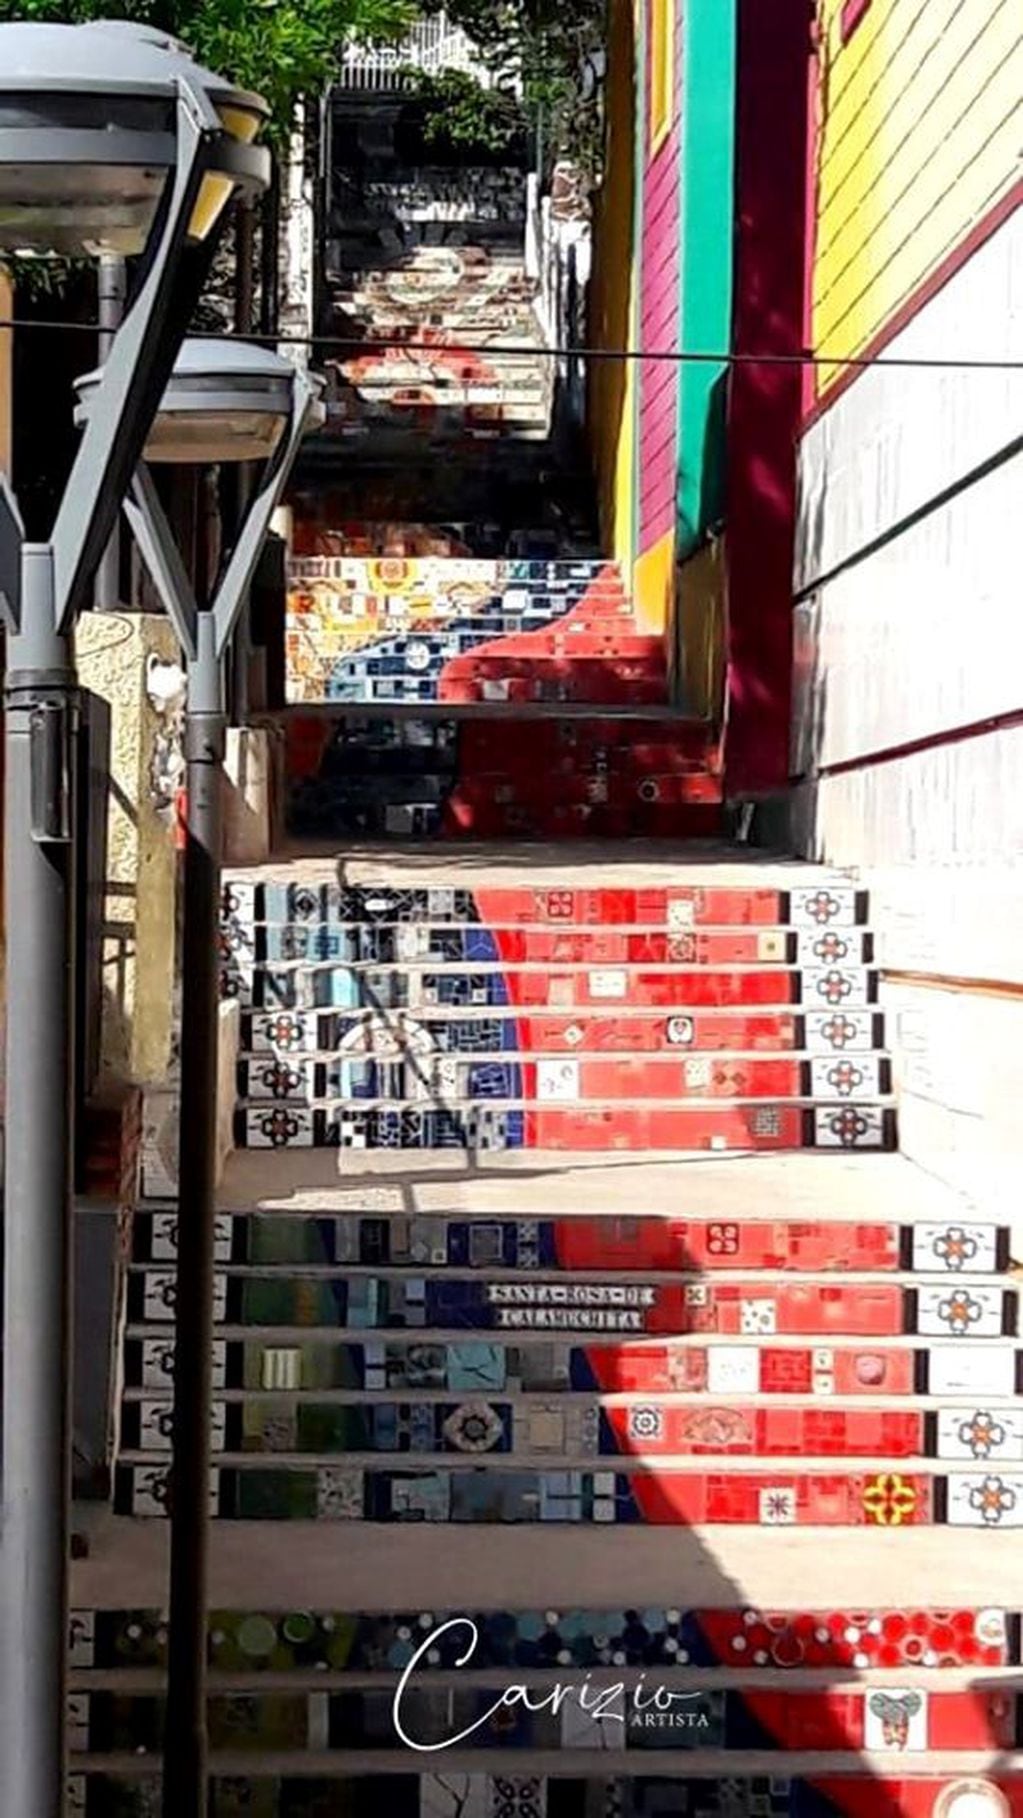 La "Escalera de Truchi", tal como se la conoce en Santa Rosa, dejó de ser un espacio gris para convertirse en otro con una impronta multicolor.